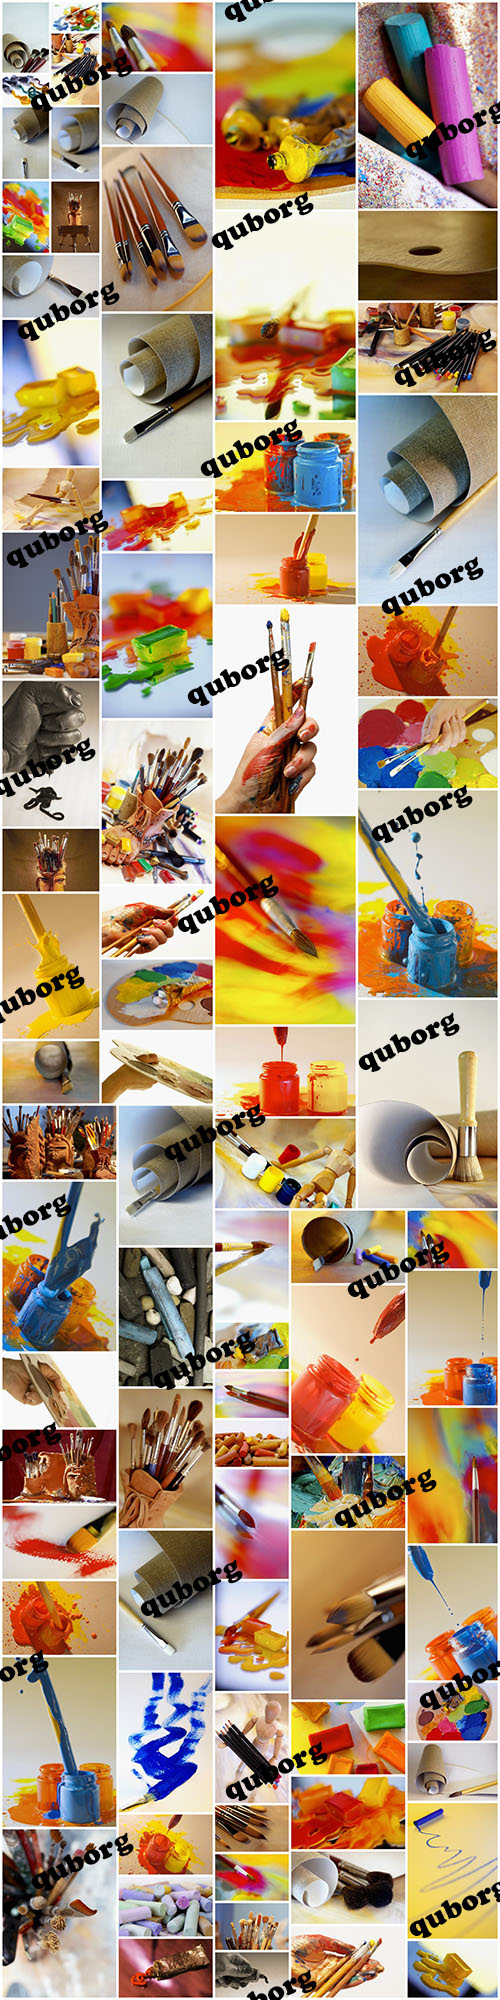 Stock Photos - Art Color